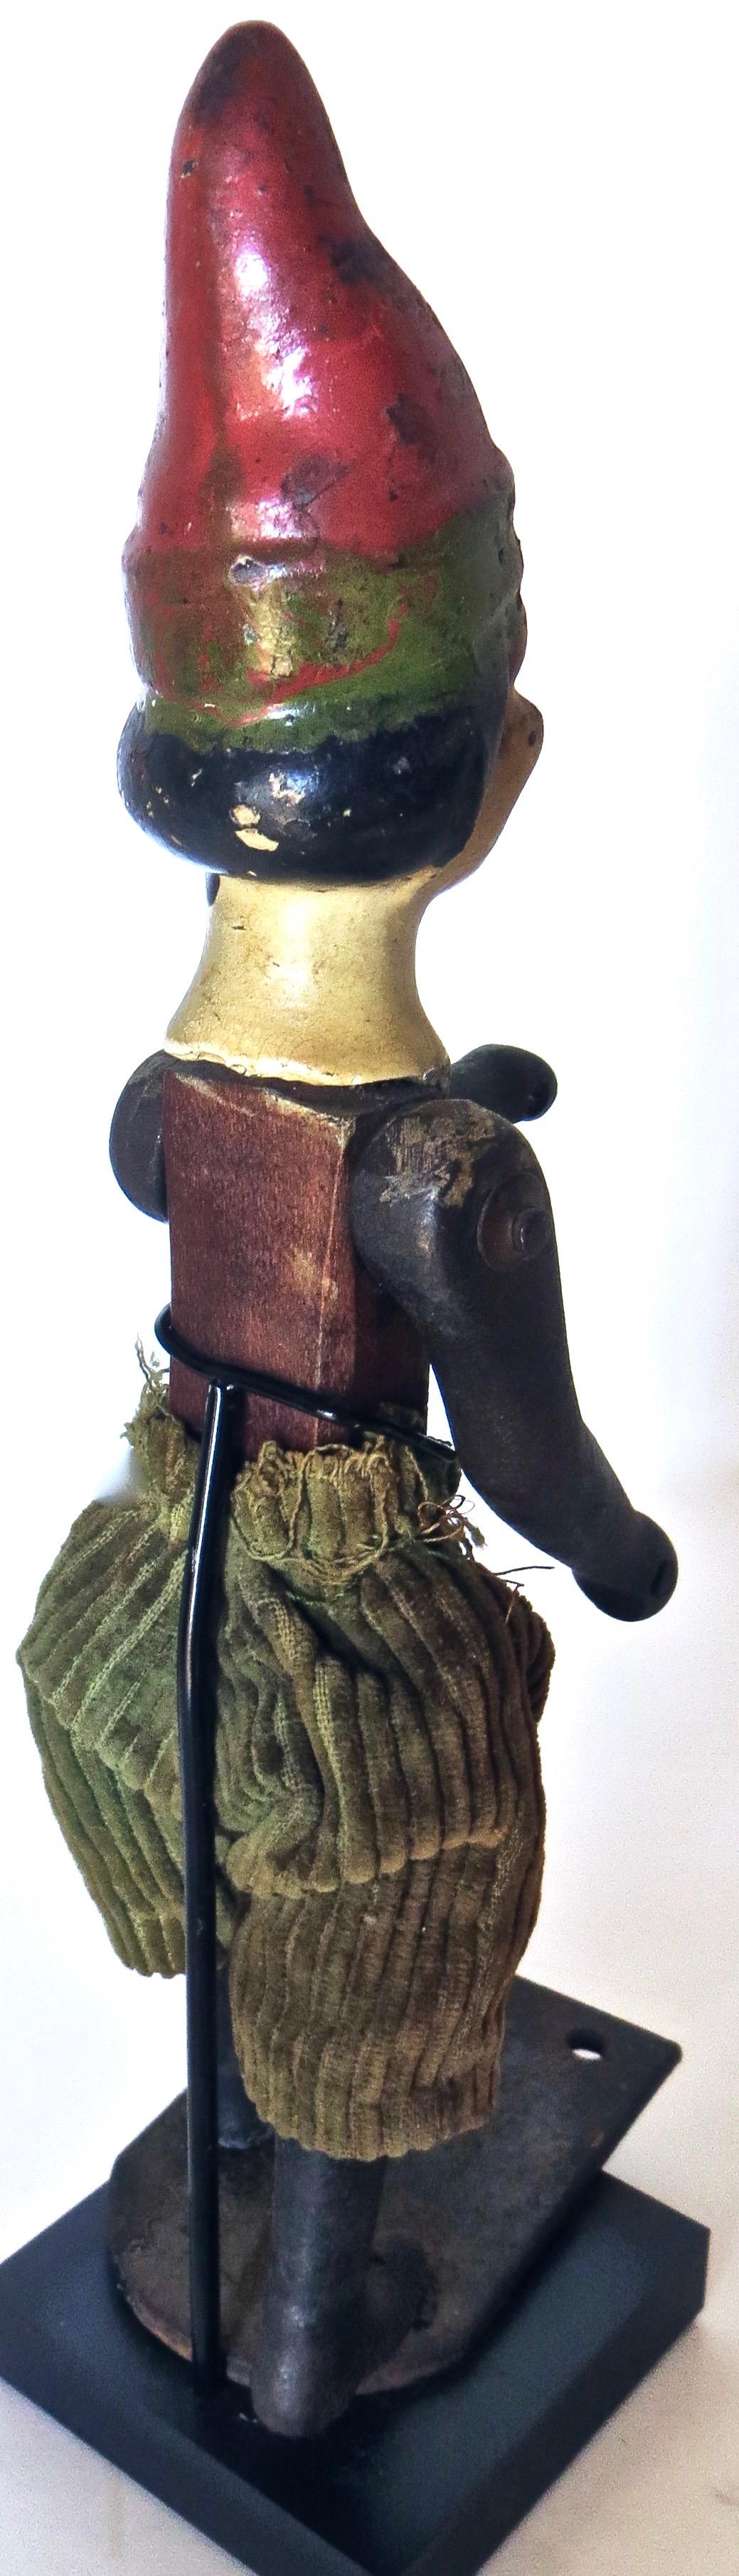 Victorian 19th C. Popcorn Maker Figural 